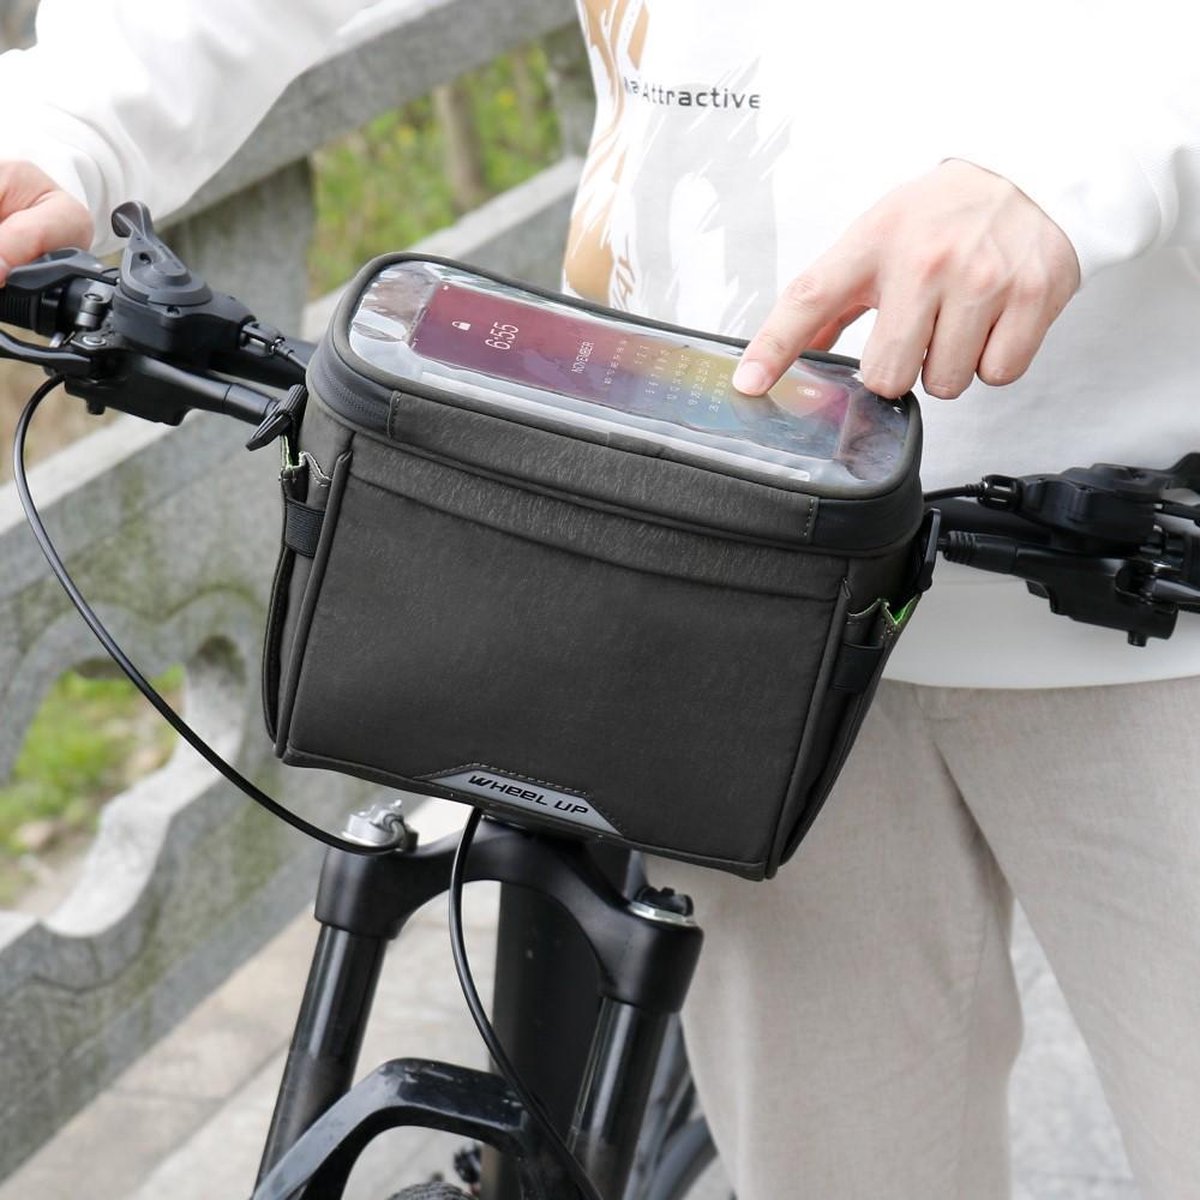 WHEEL UP D21 - Waterdichte tas voor aan de fiets - Fiets tas stuurtas met smartphone houder – waterdicht – Fietstas stuur – Smartphone houder fiets – T/M 6.5 inch - Zwart